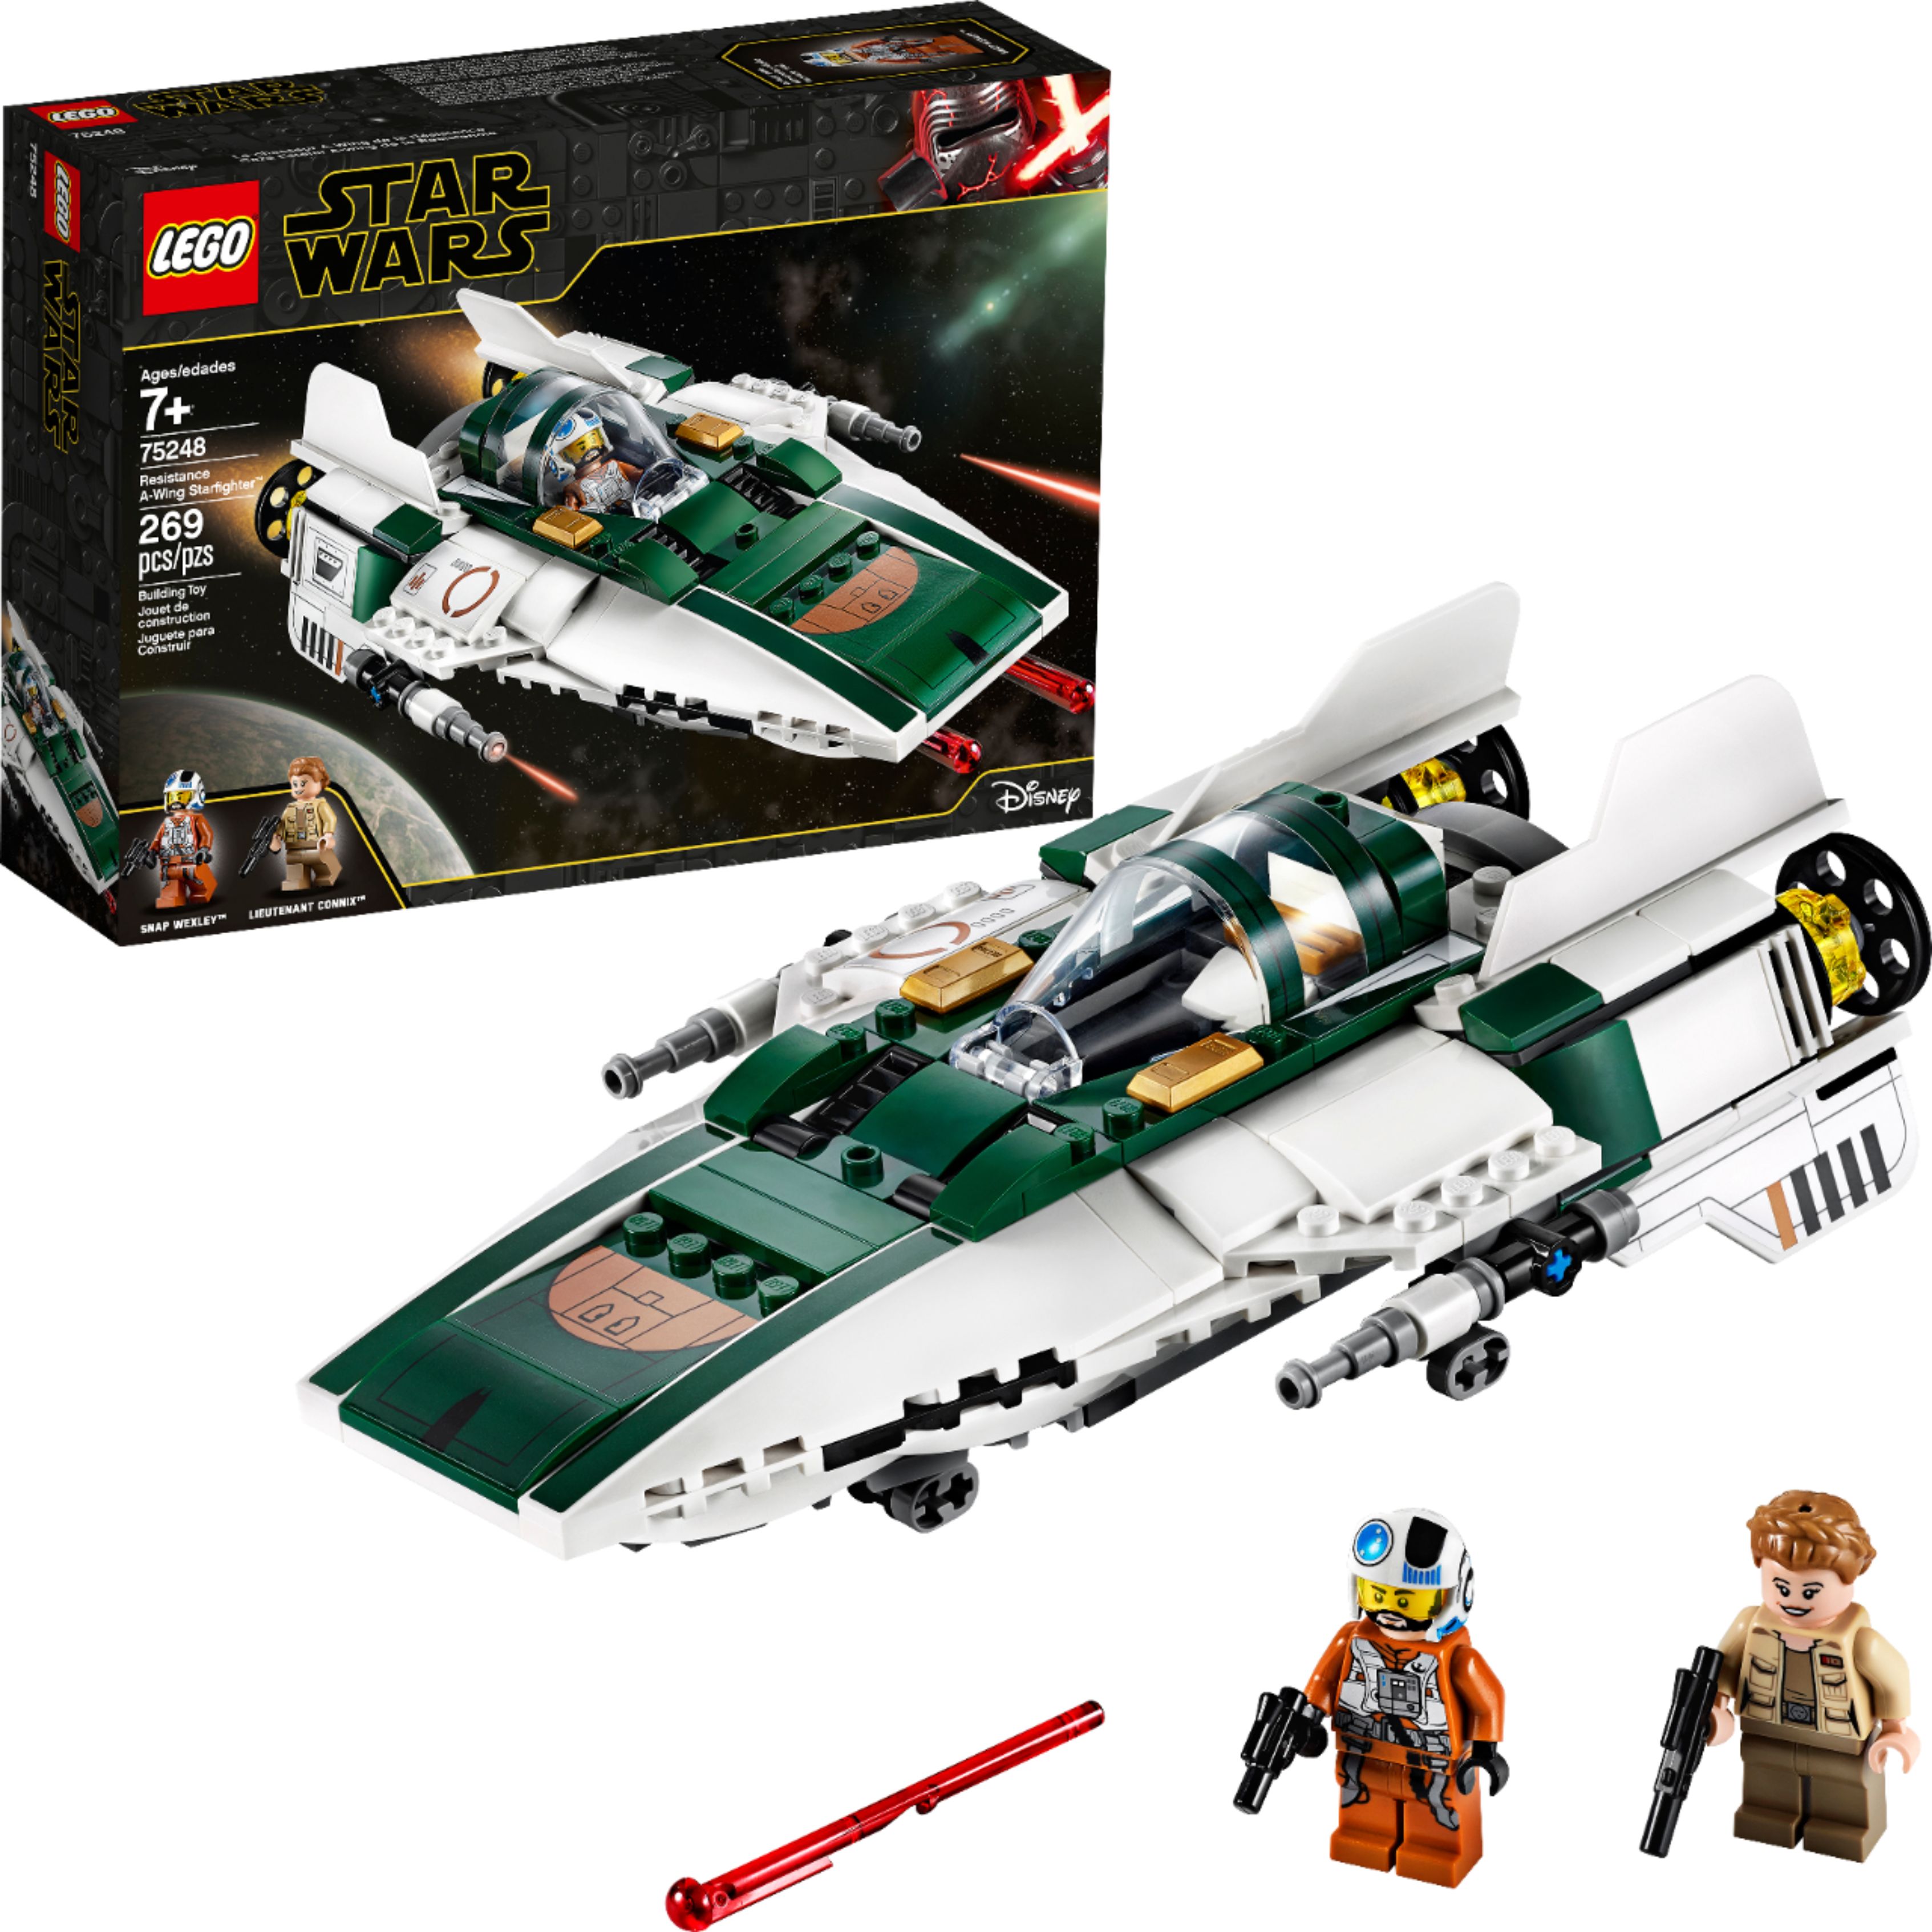 传奇终焉 LEGO 星球大战9 天行者崛起 新品套装 75248 Resistance A-Wing Starfighter（阻力A翼星际战斗机）